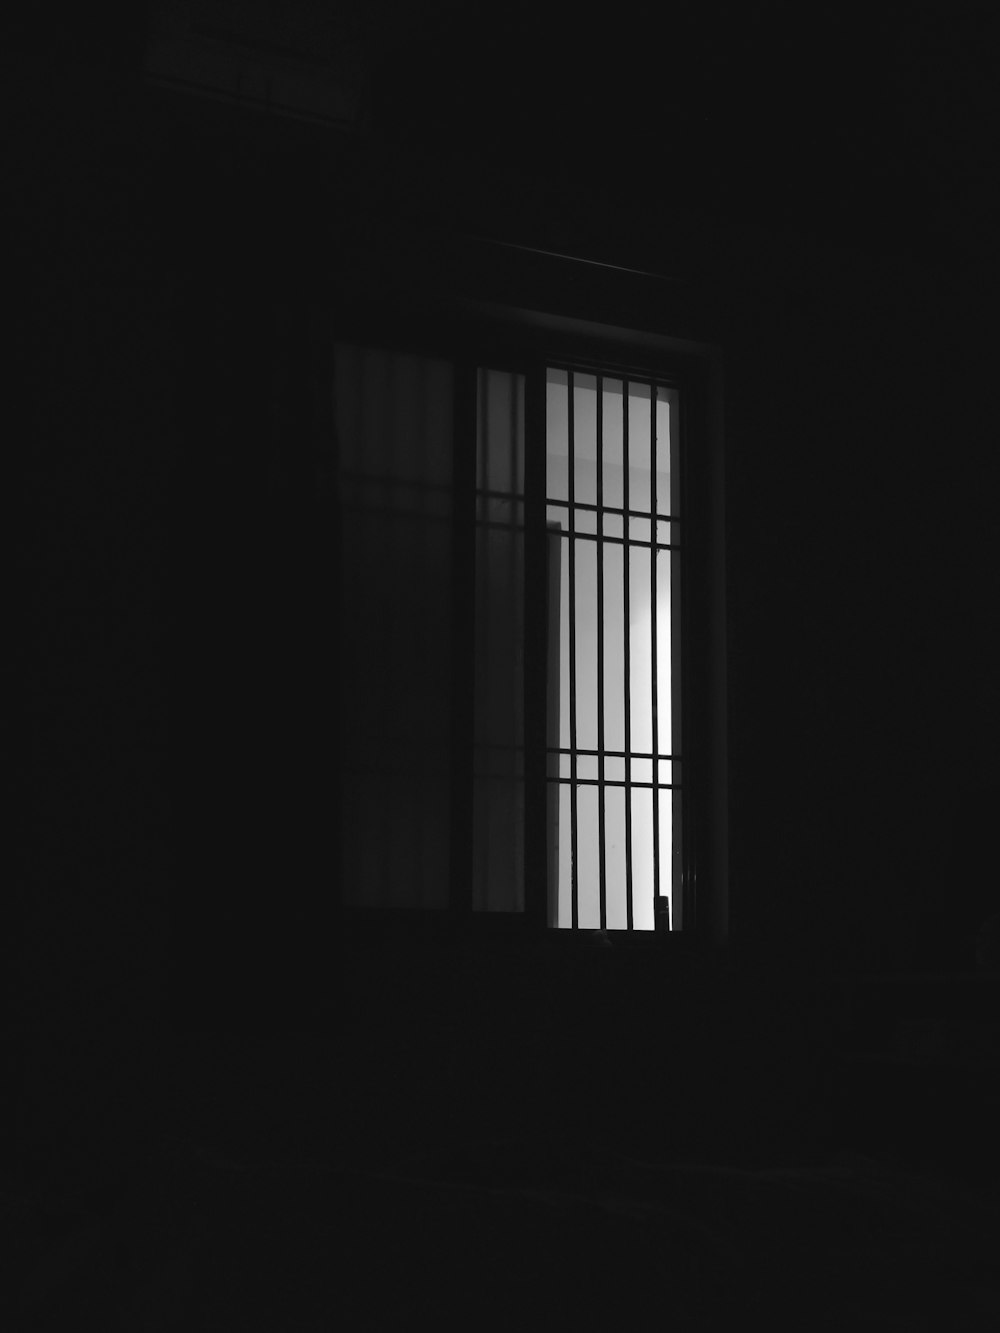 暗い部屋で黒枠のガラス窓の写真 Unsplashで見つけるグレーの無料写真